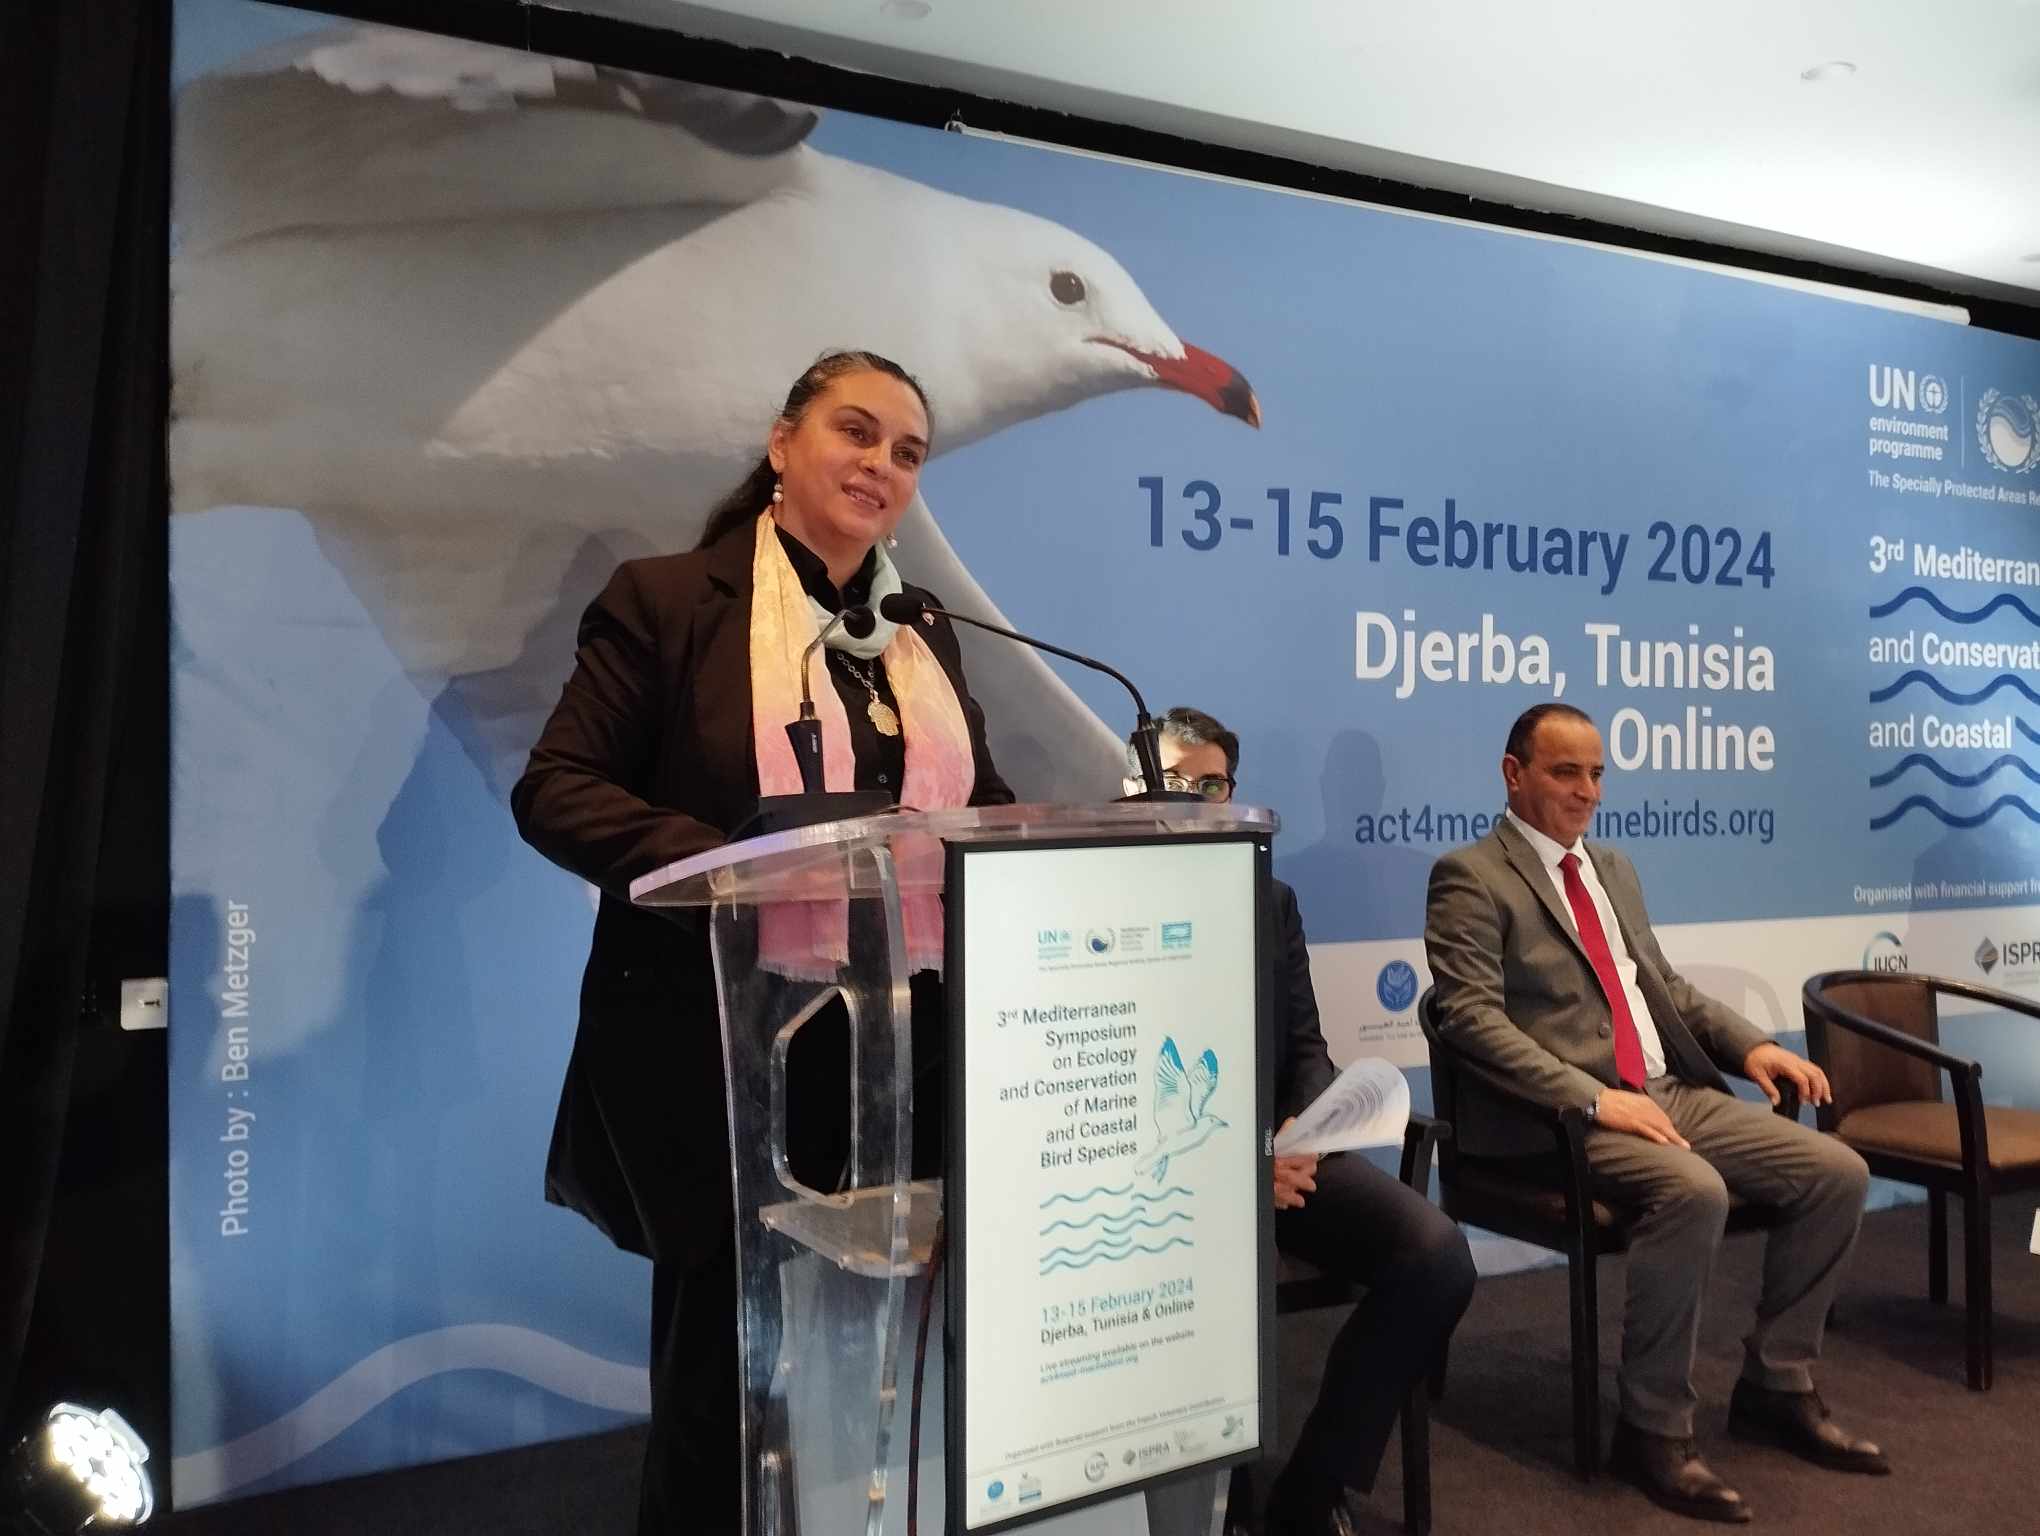 صور/جربة..افتتاح اشغال المؤتمر المتوسطي الثالث حول البيئة الايكولوجية والحفاظ على الطيور البحرية والساحلية 